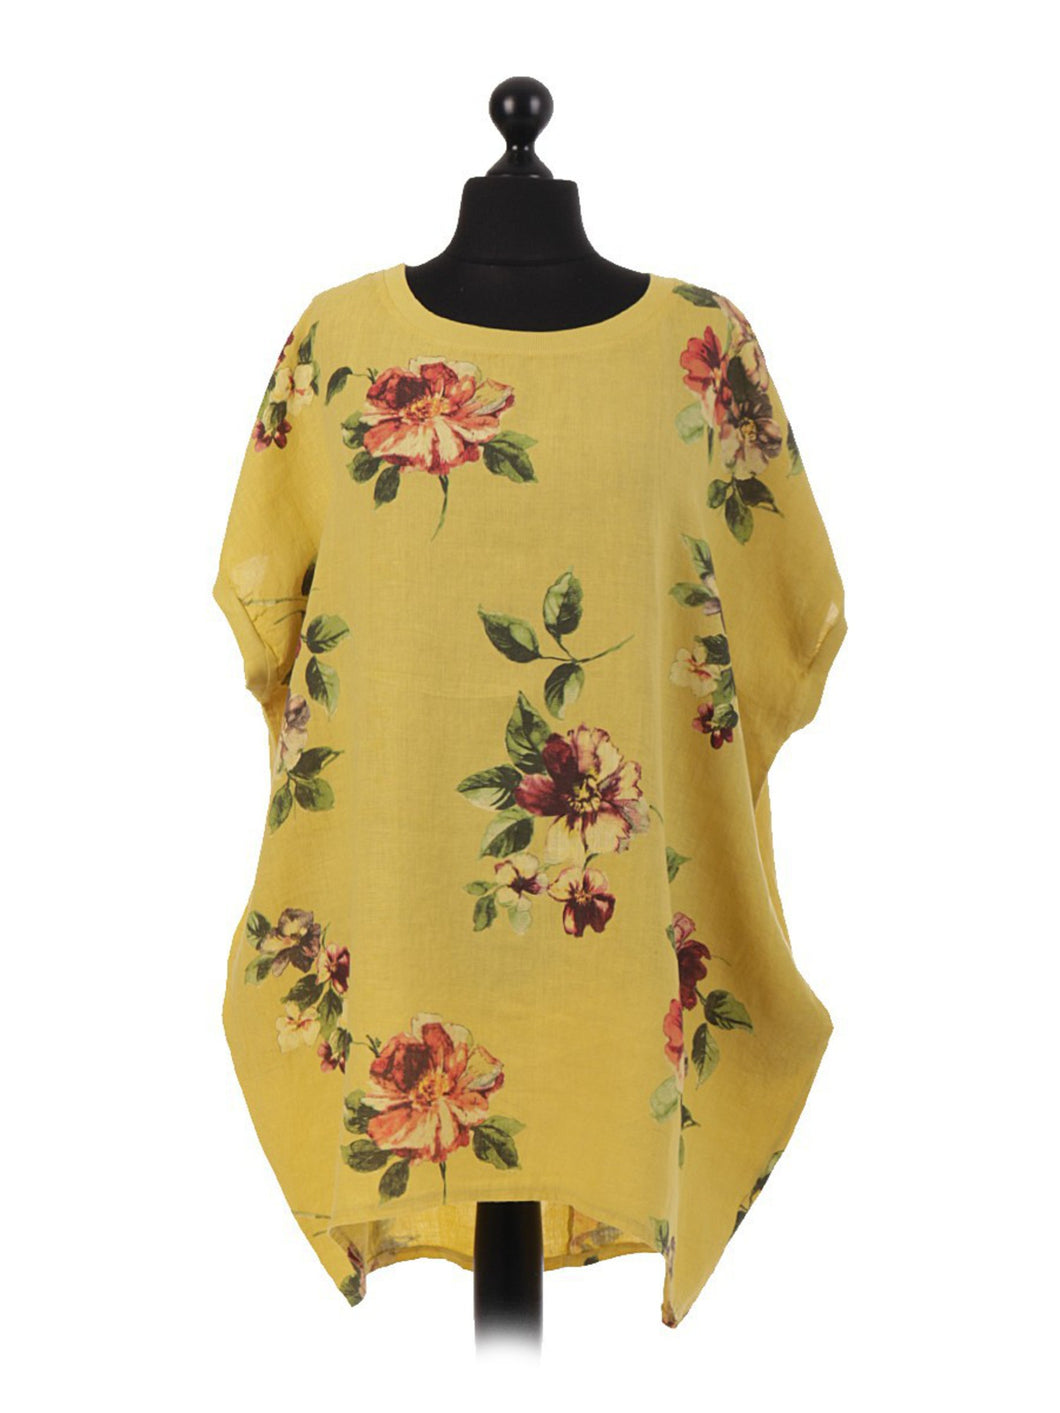 Adeline Linen Top/Dress Mustard